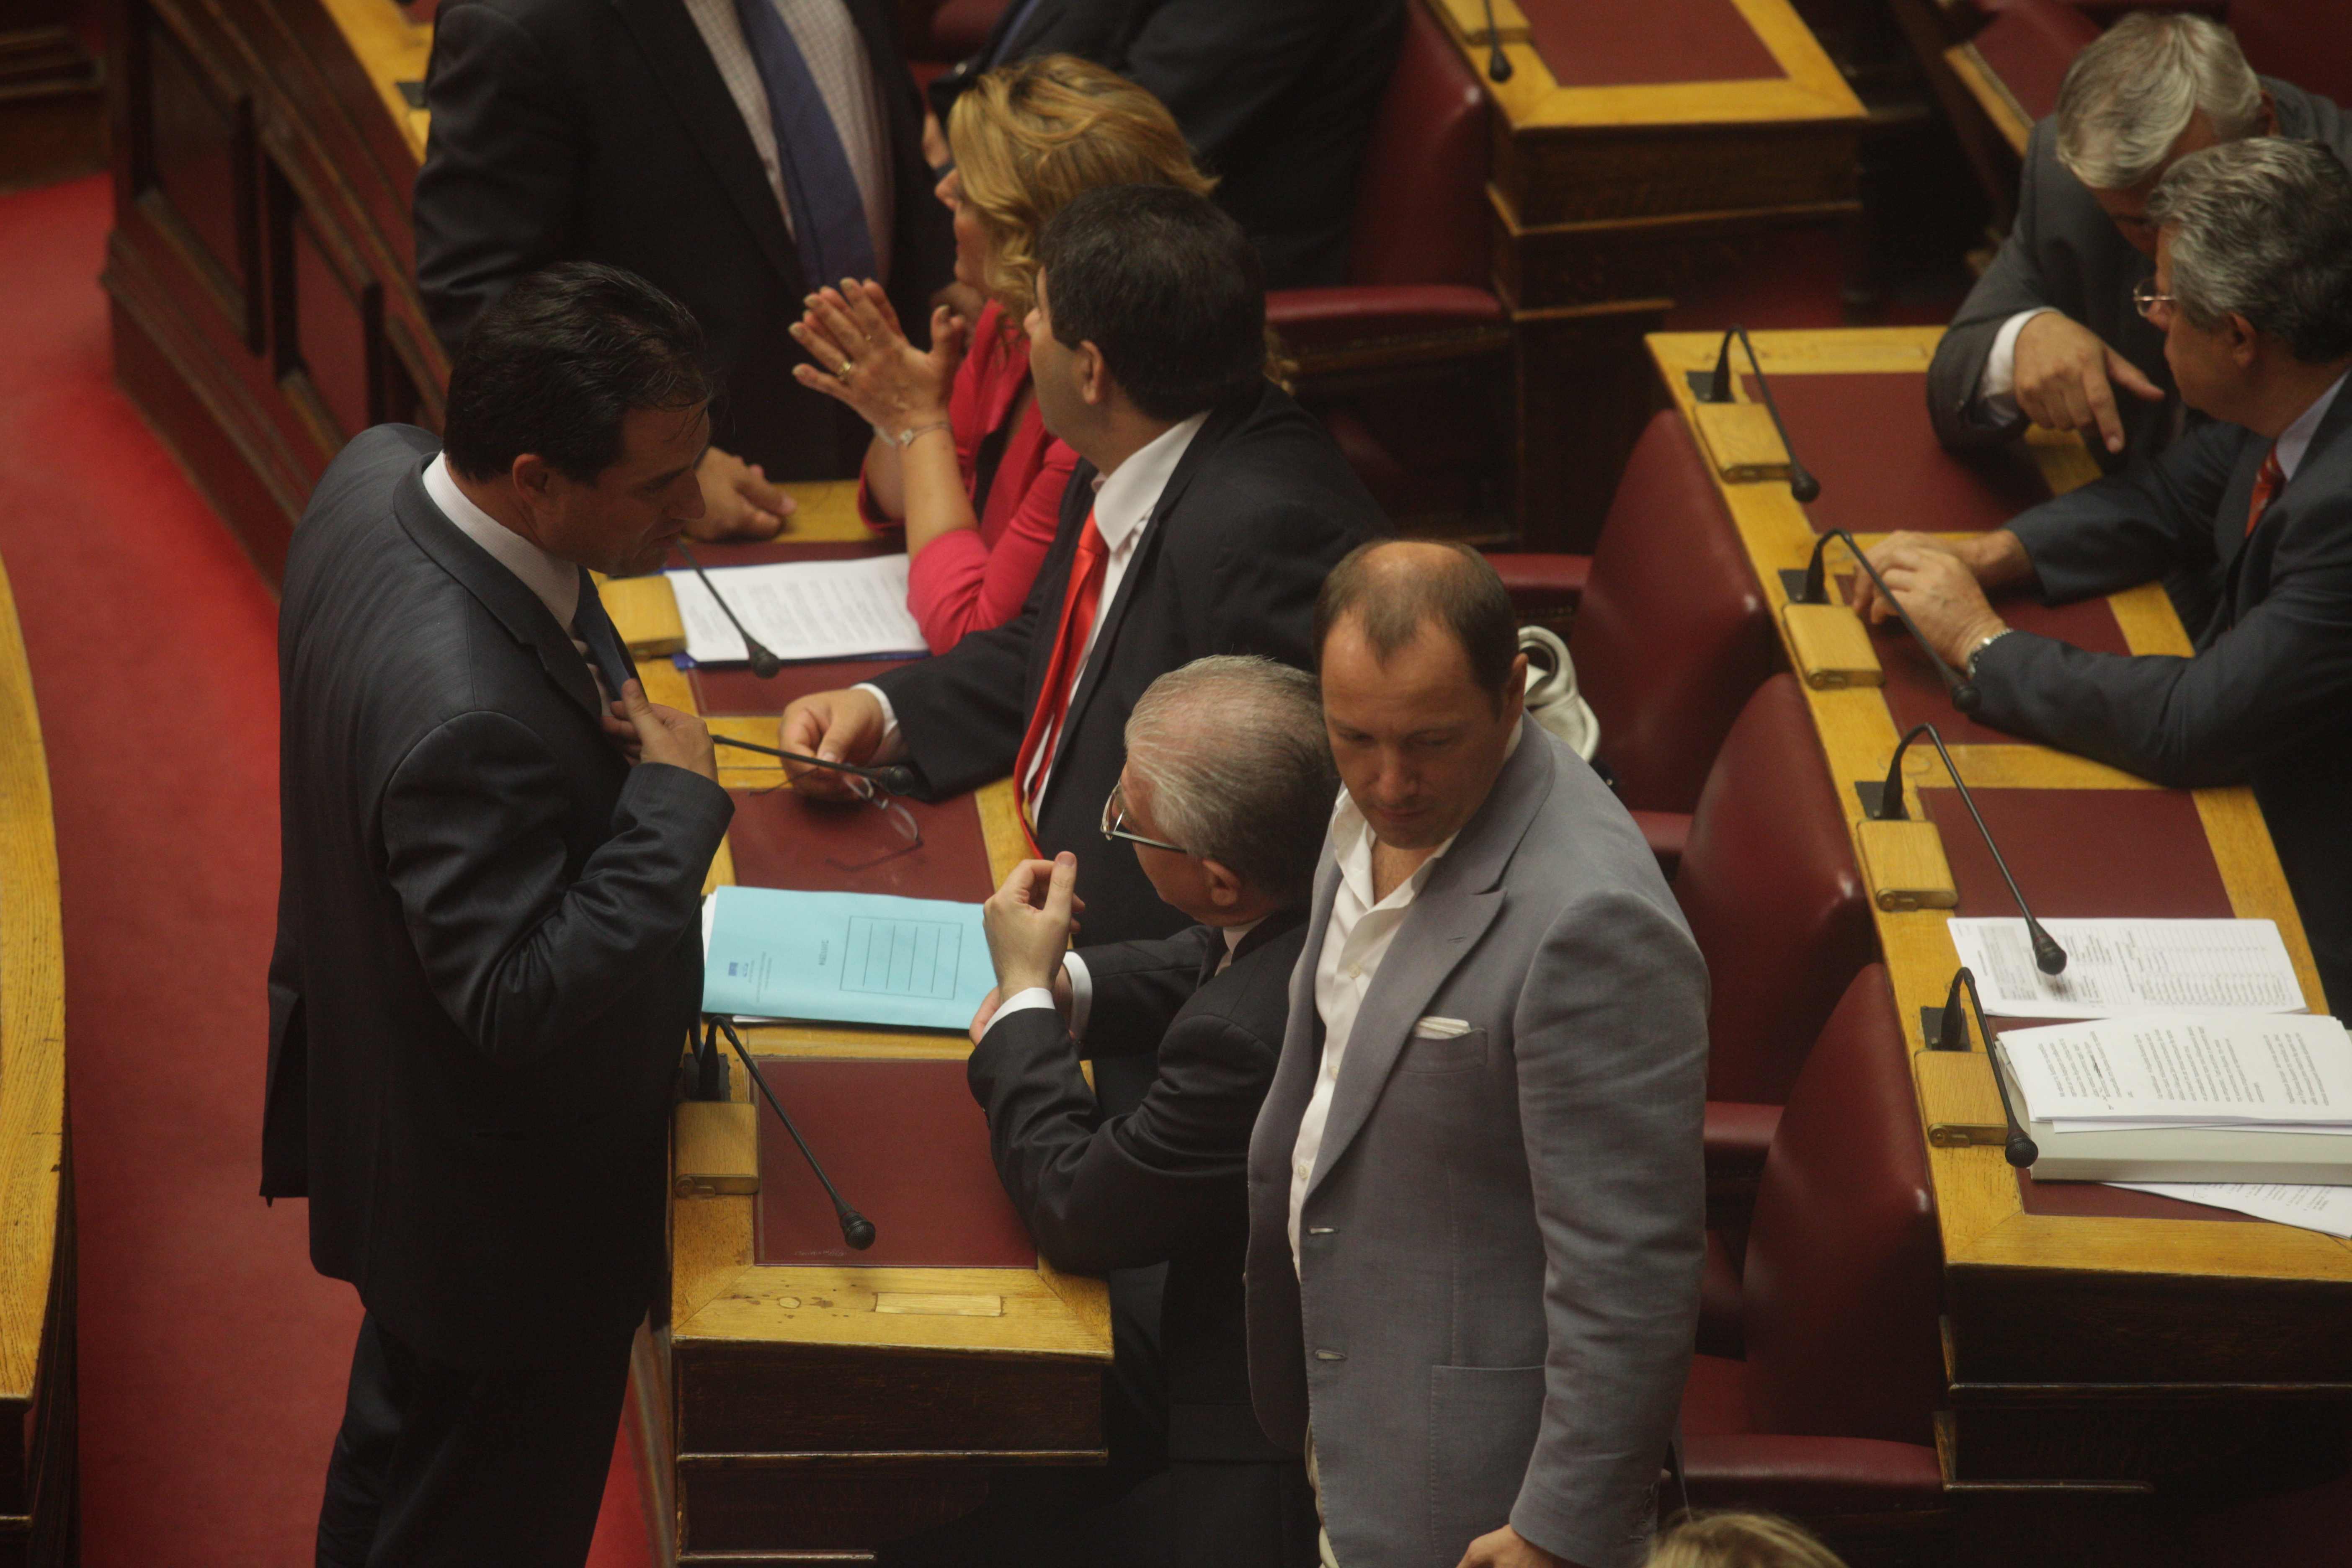 ΦΩΤΟ EUROKINISSI - Τα πηγαδάκια λίγο πριν την ψηφοφορία στη Βουλή δίνουν και παίρνουν